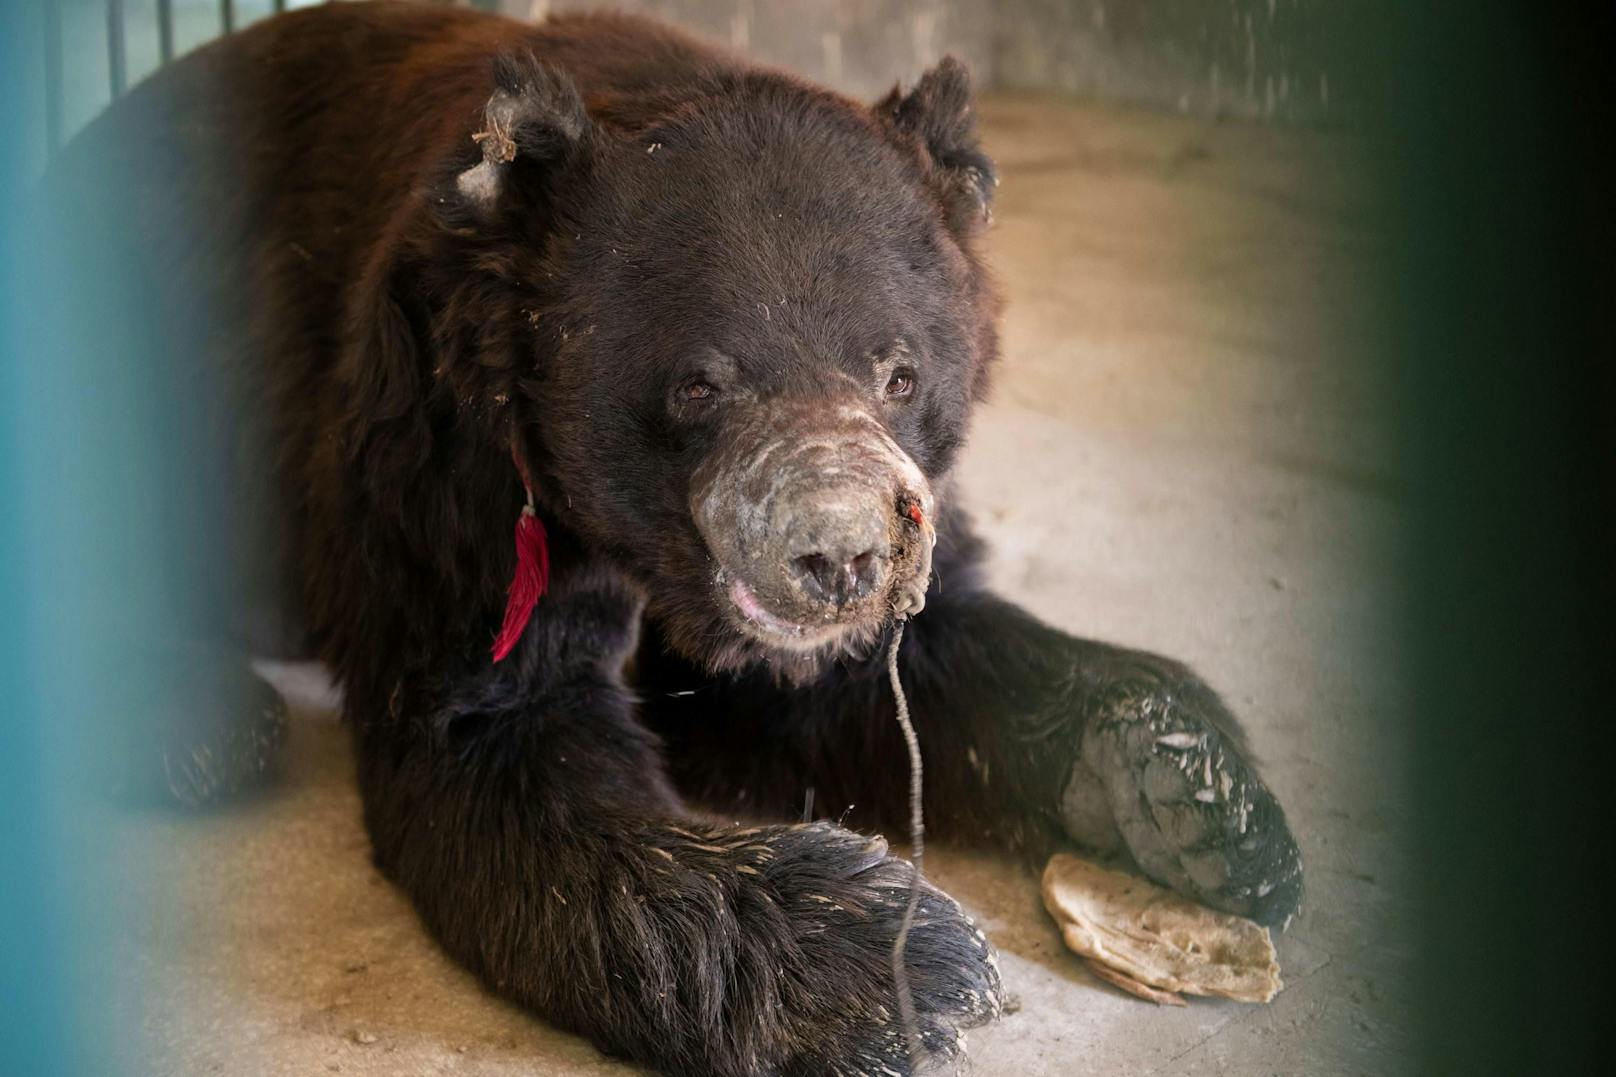 Bei der Bärenhetze werden hilflose Bären an einer Kette gehalten und gezwungen, gegen Hunde zu kämpfen.